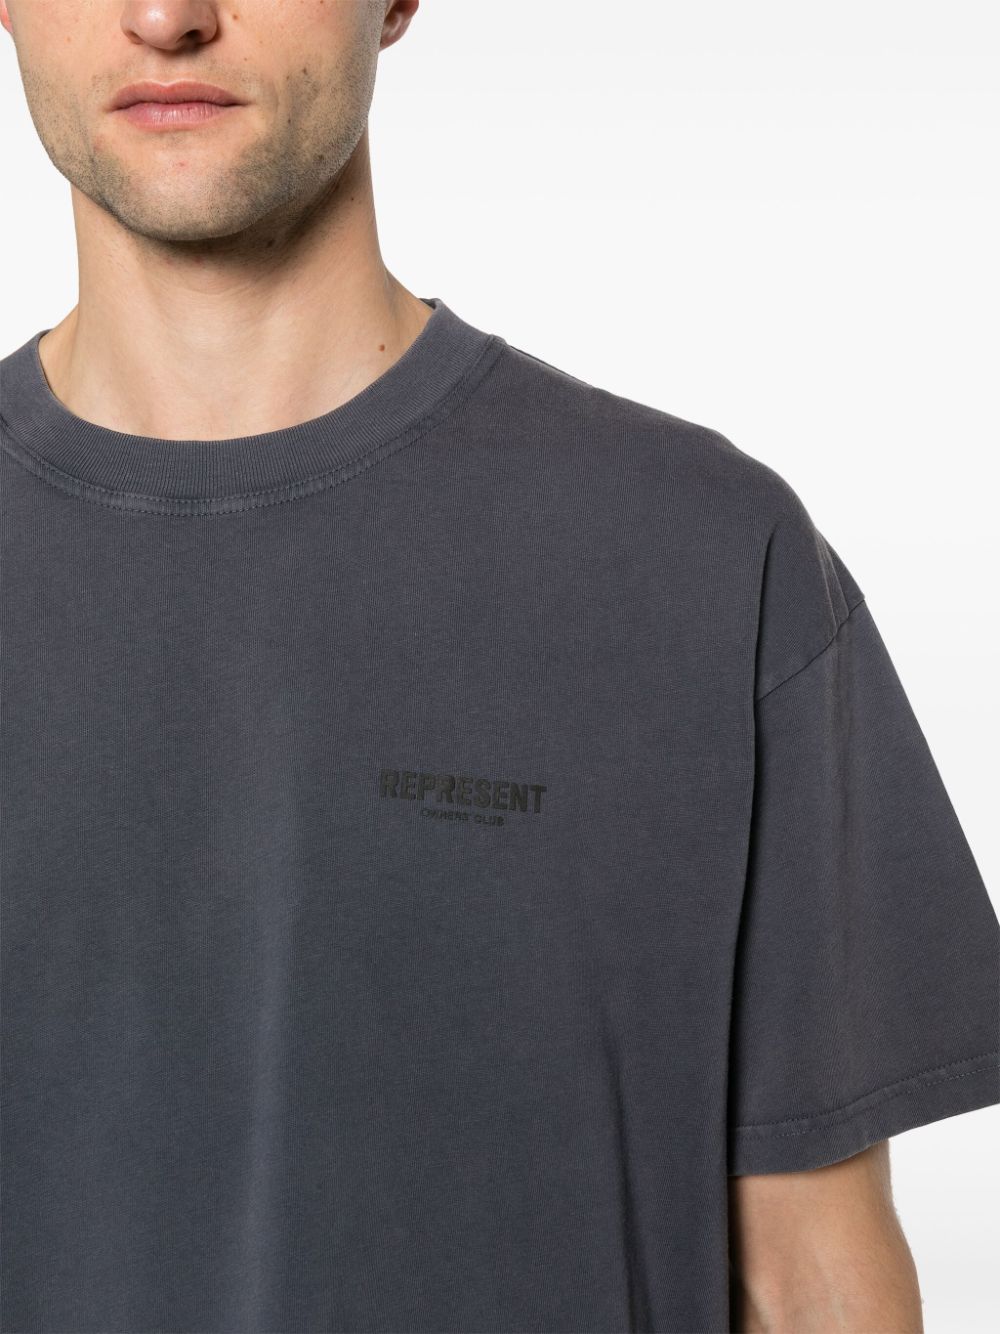 Dark gray oversized t-shirt